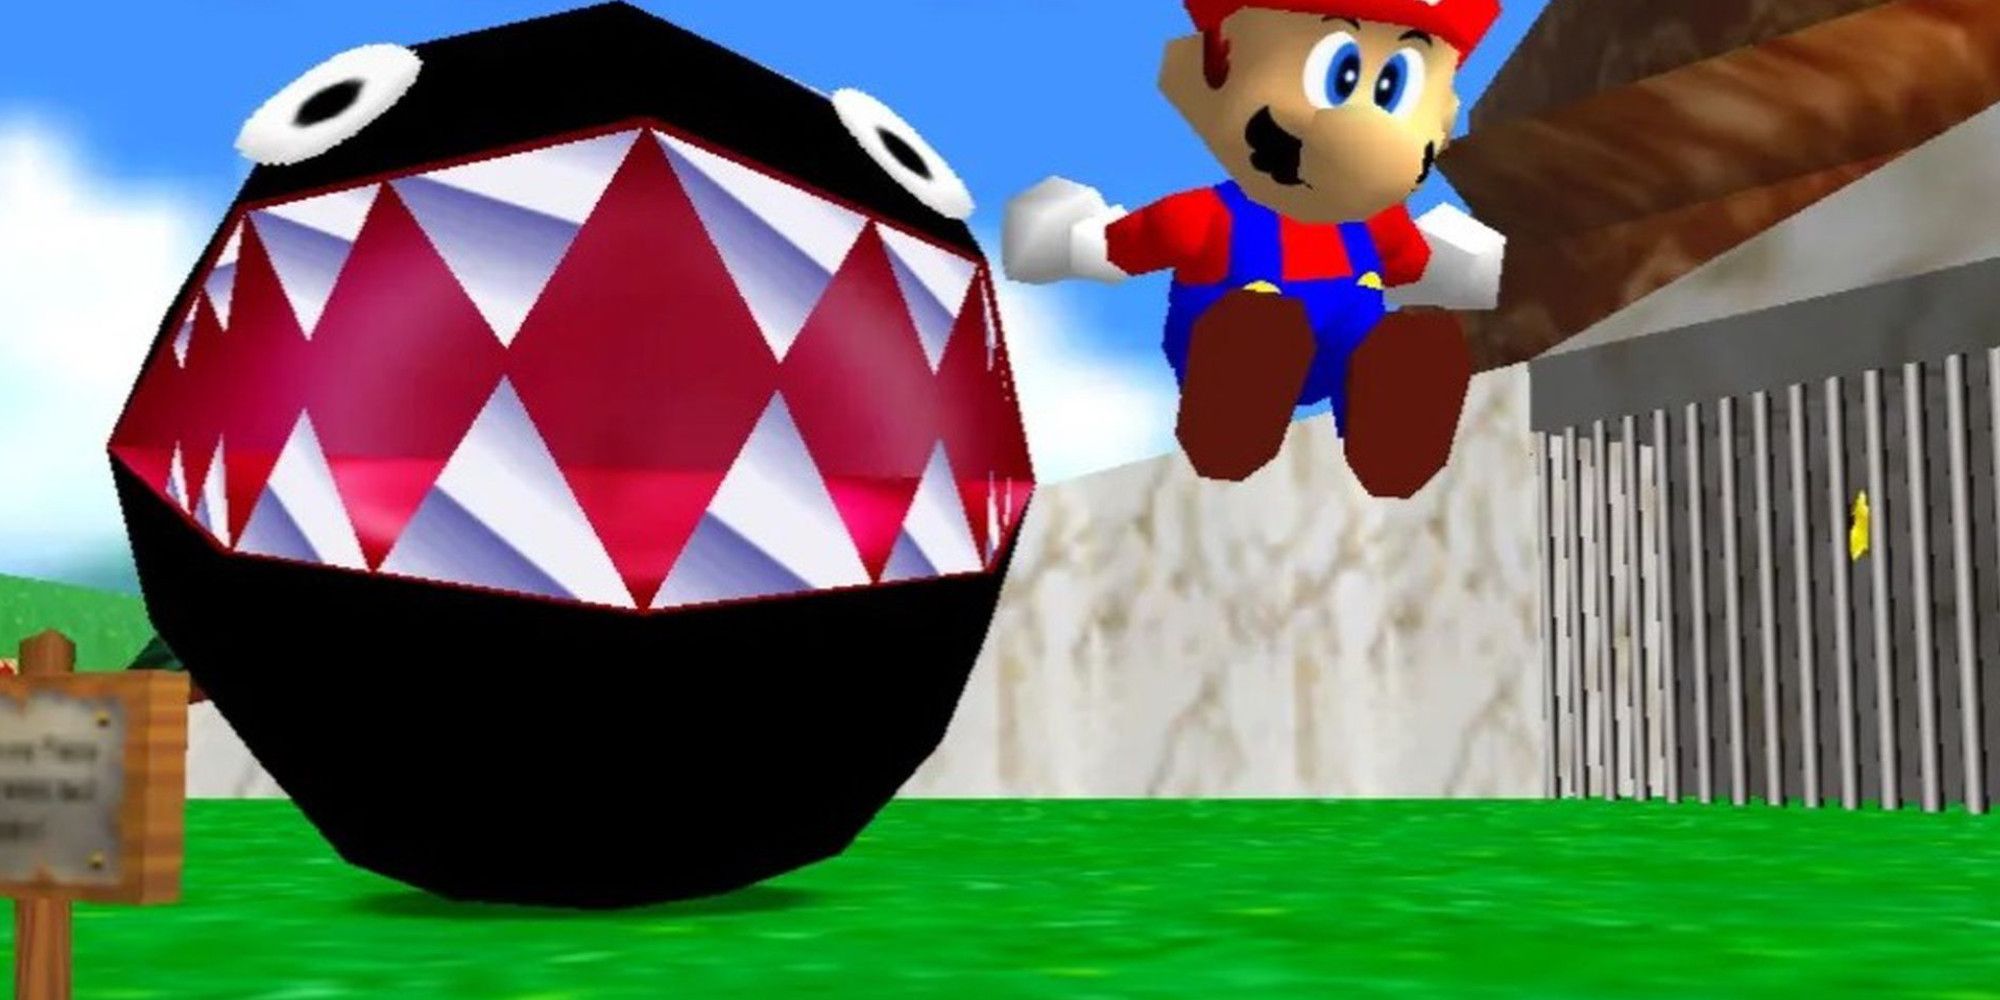 Mario avoiding chain champs in Super Mario 64.